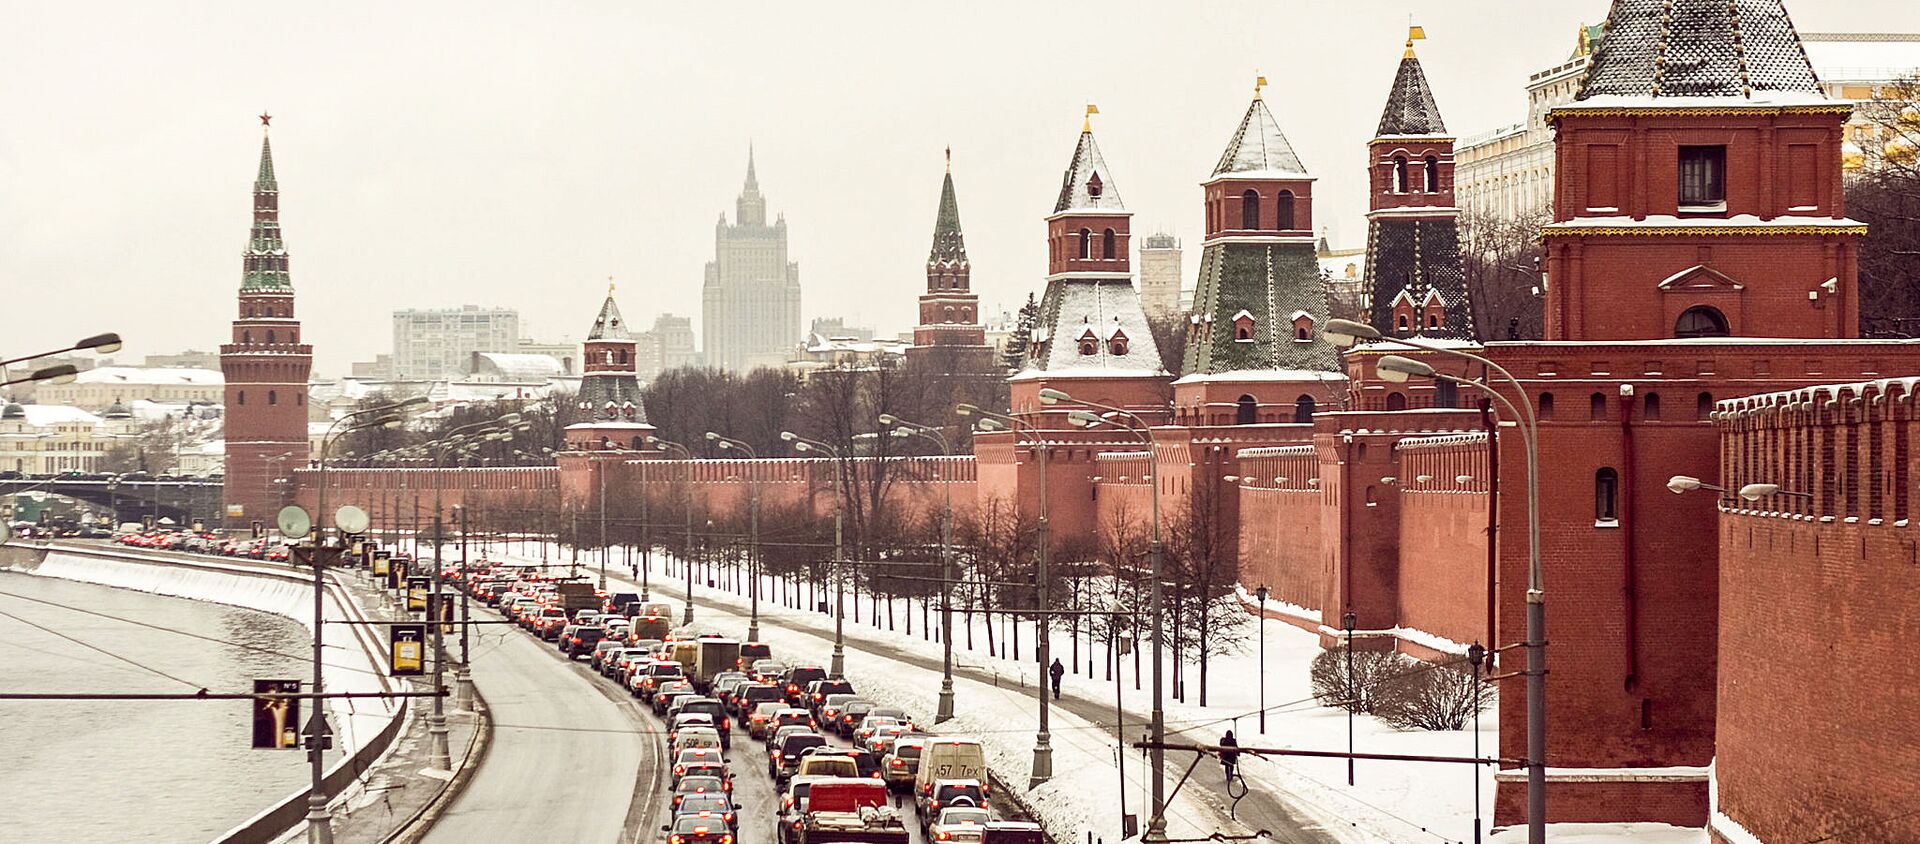 Вид на Кремлевскую набережную с Большого Москворецкого моста - Sputnik Литва, 1920, 01.03.2021